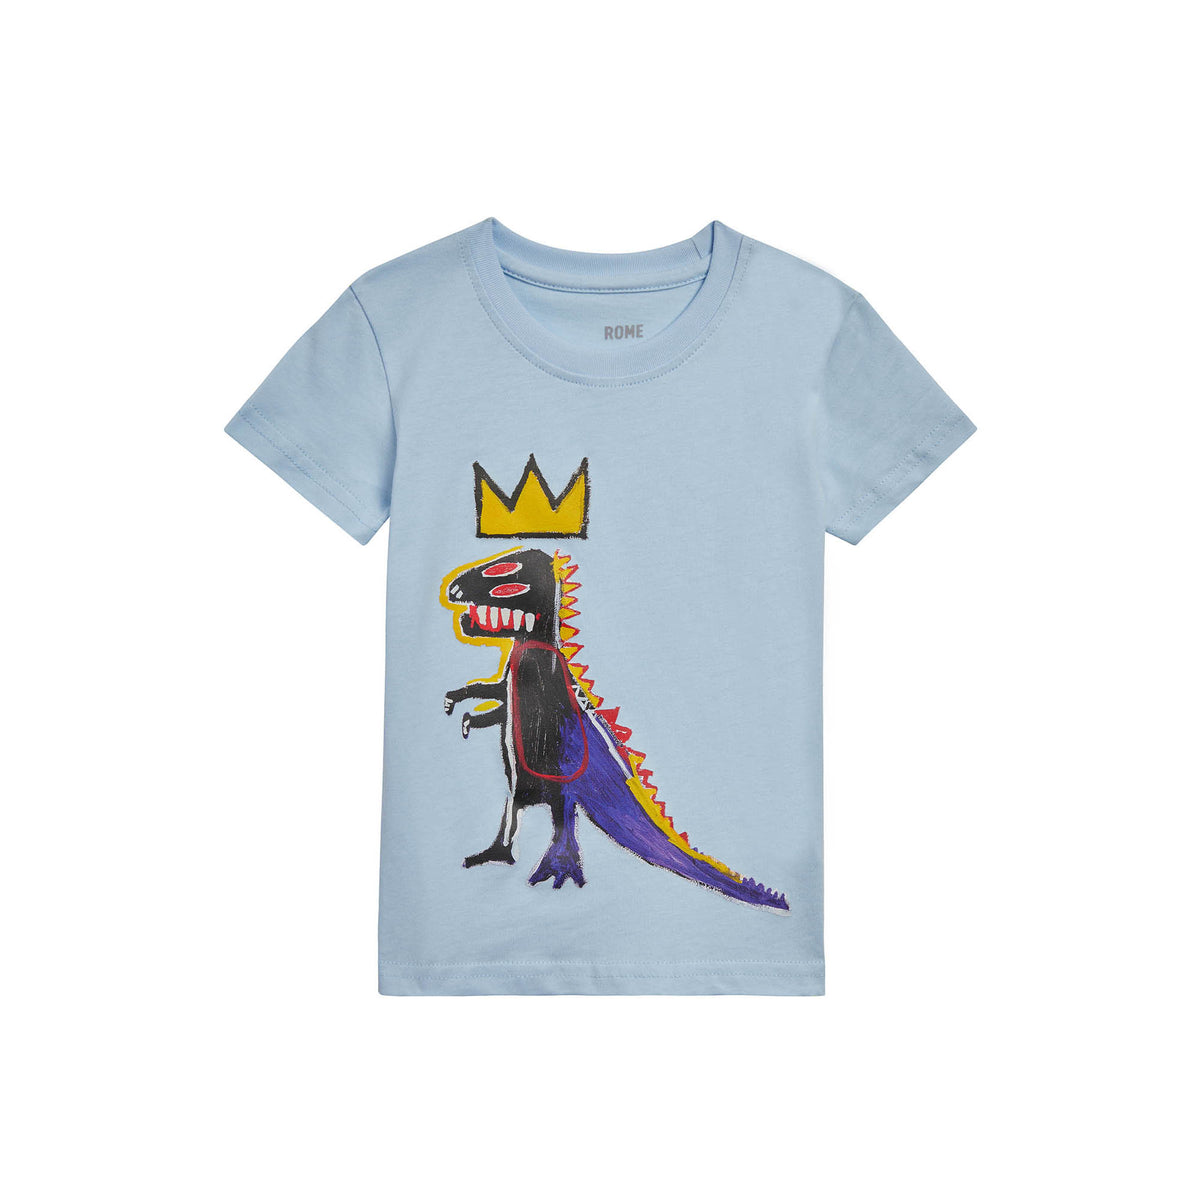 Basquiat "Pez Dispenser" (Dino) Kids T-shirt - Multiple Colors Available